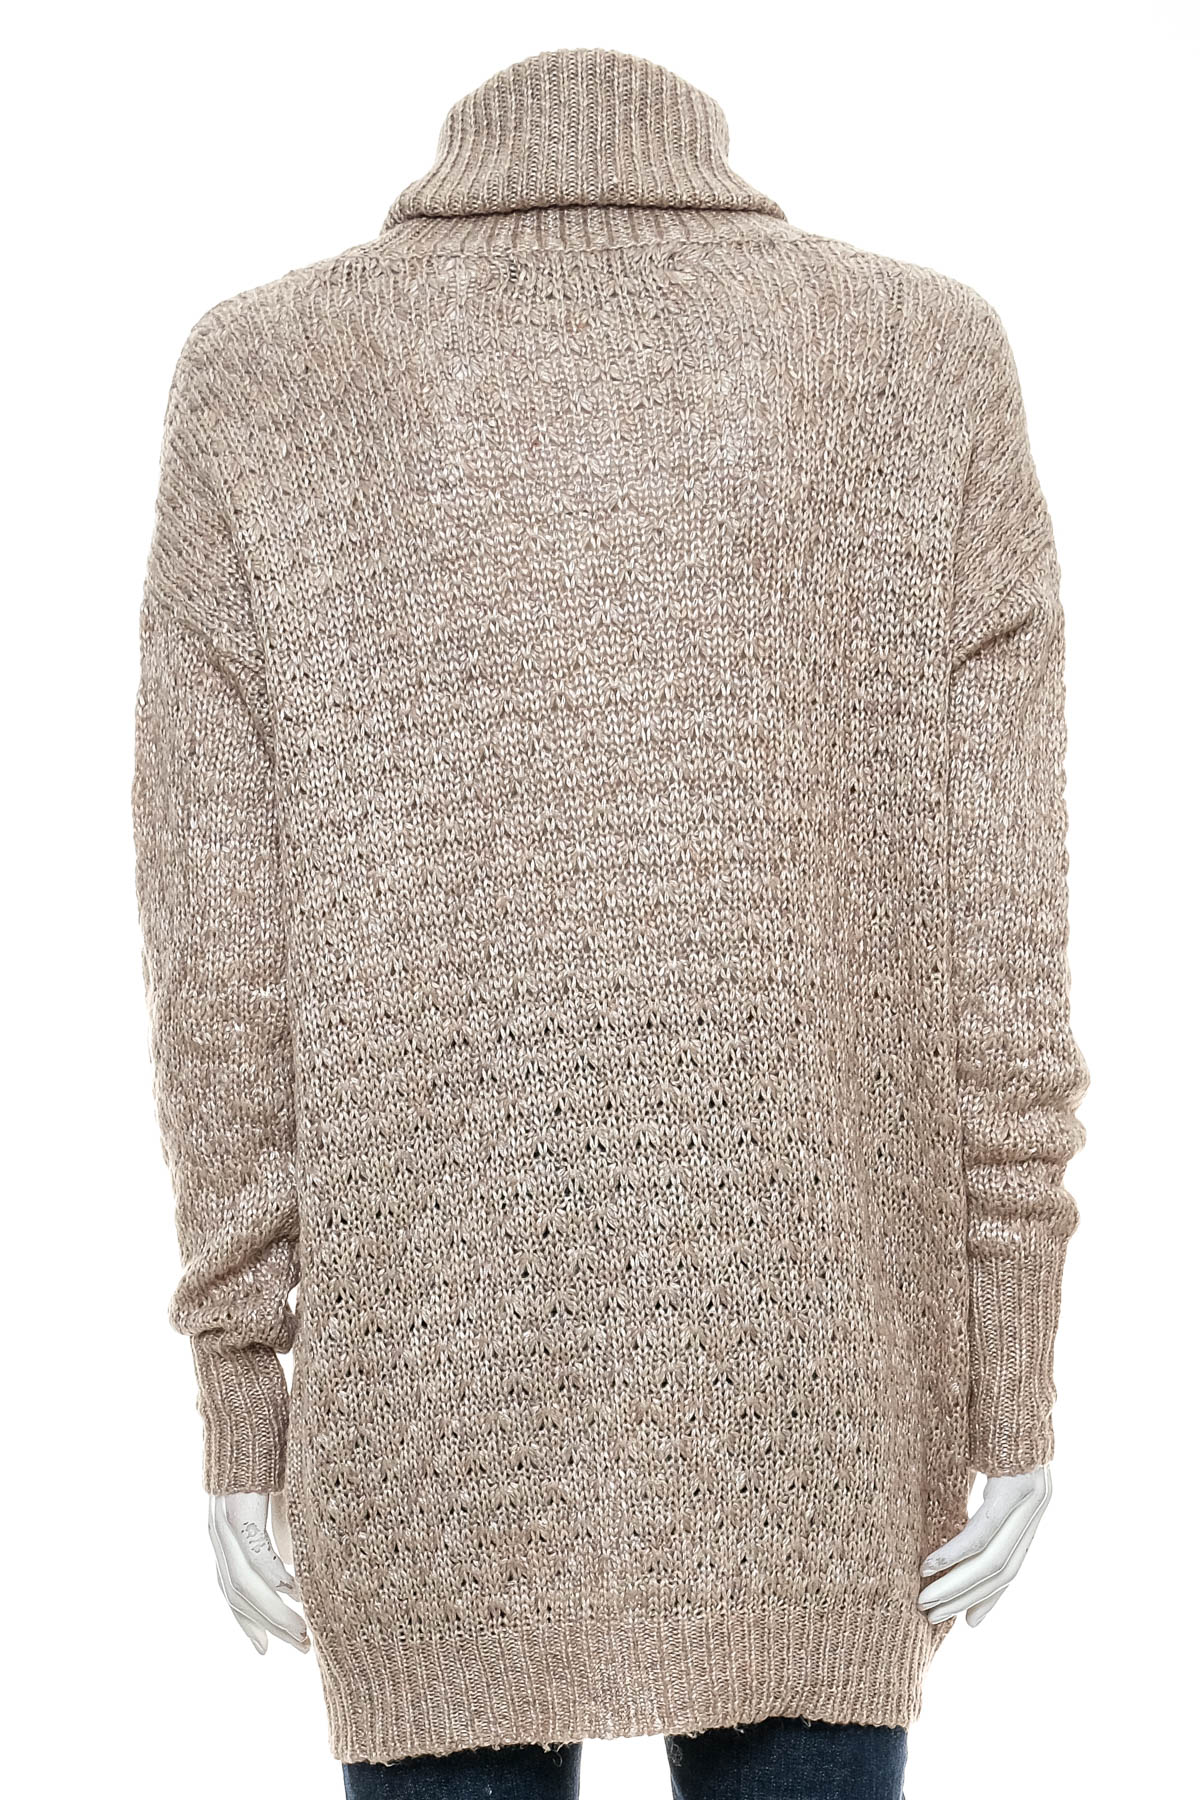 Women's sweater - VERO MODA - 1